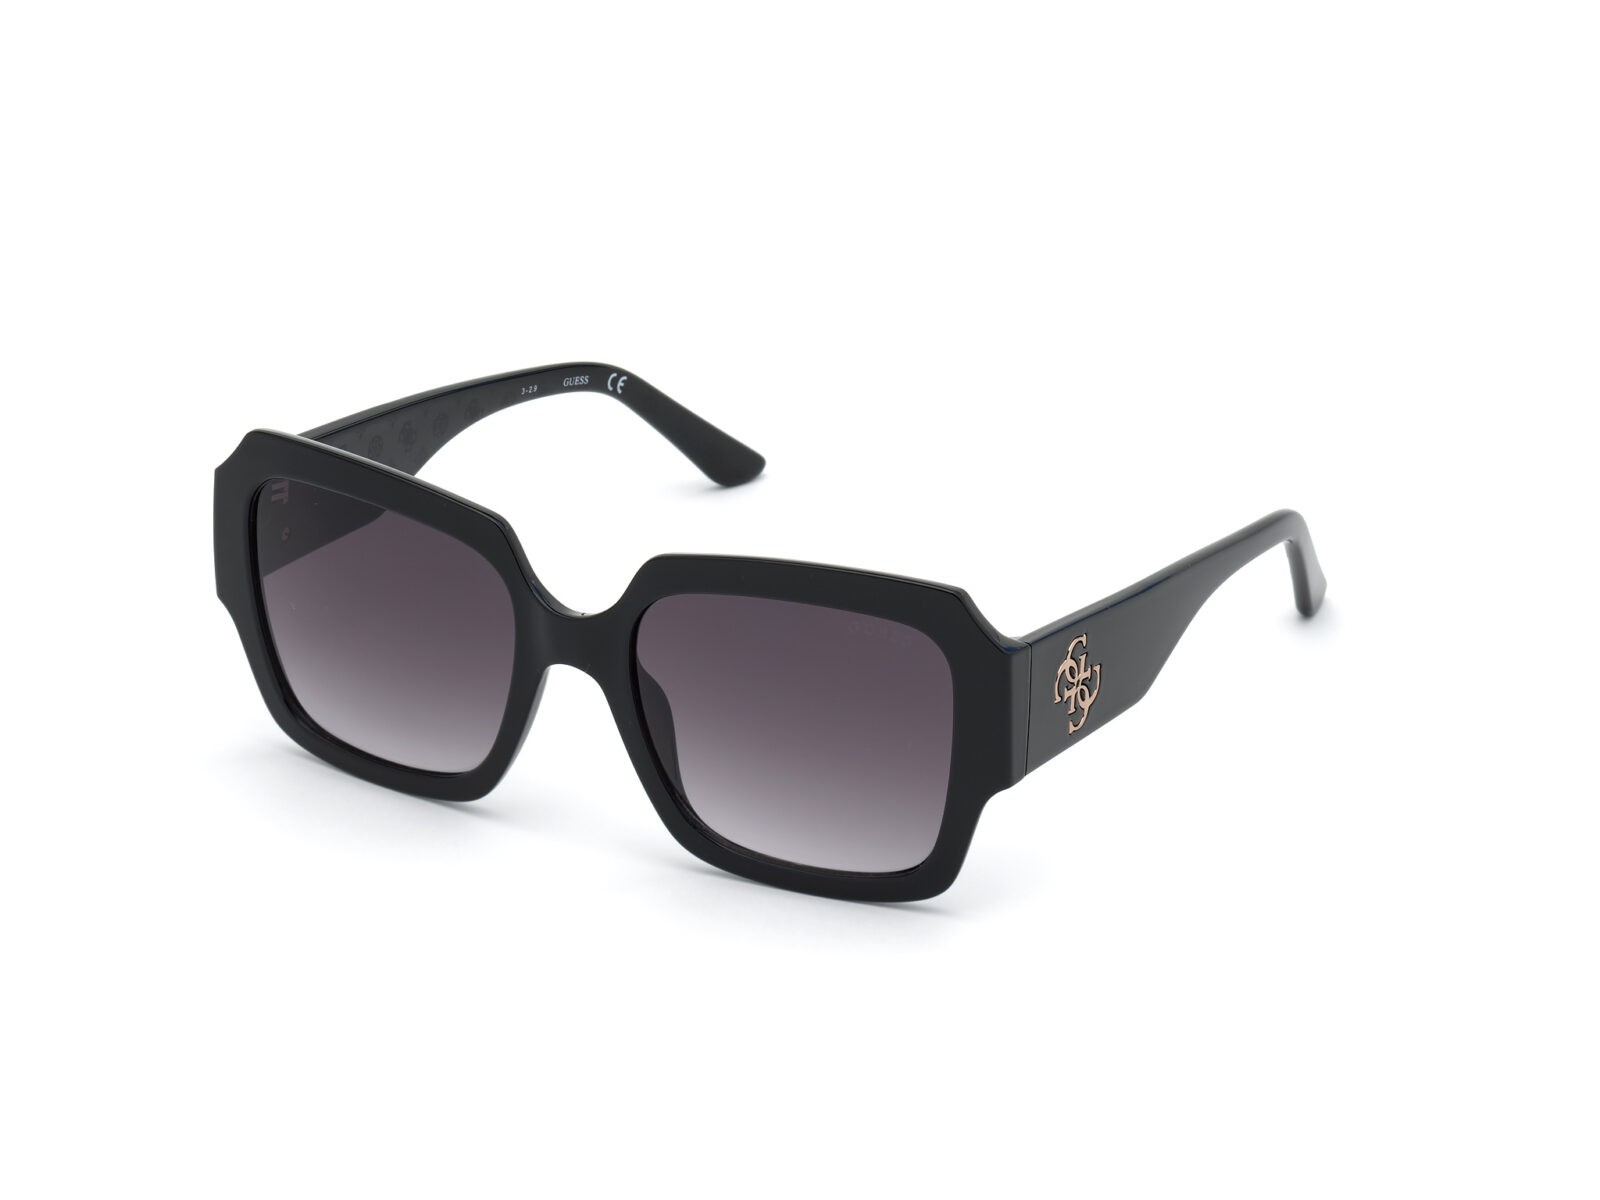 Sunglasses di Guess Donna Accessori da Occhiali da sole da 